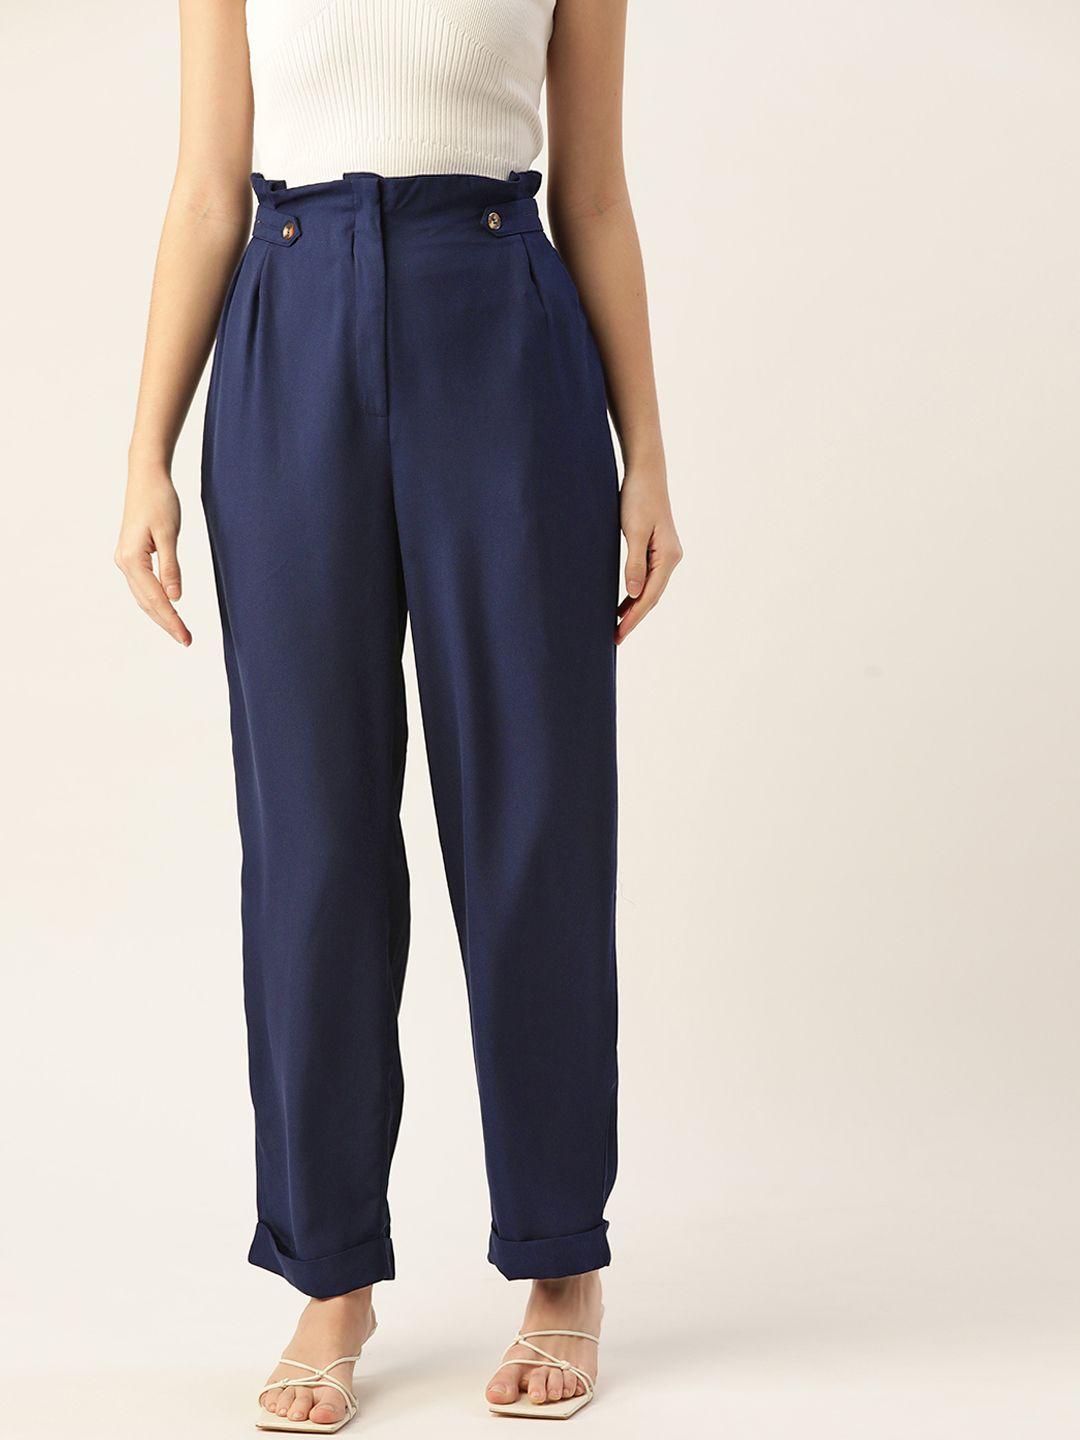 dressberry-women-navy-blue-trousers